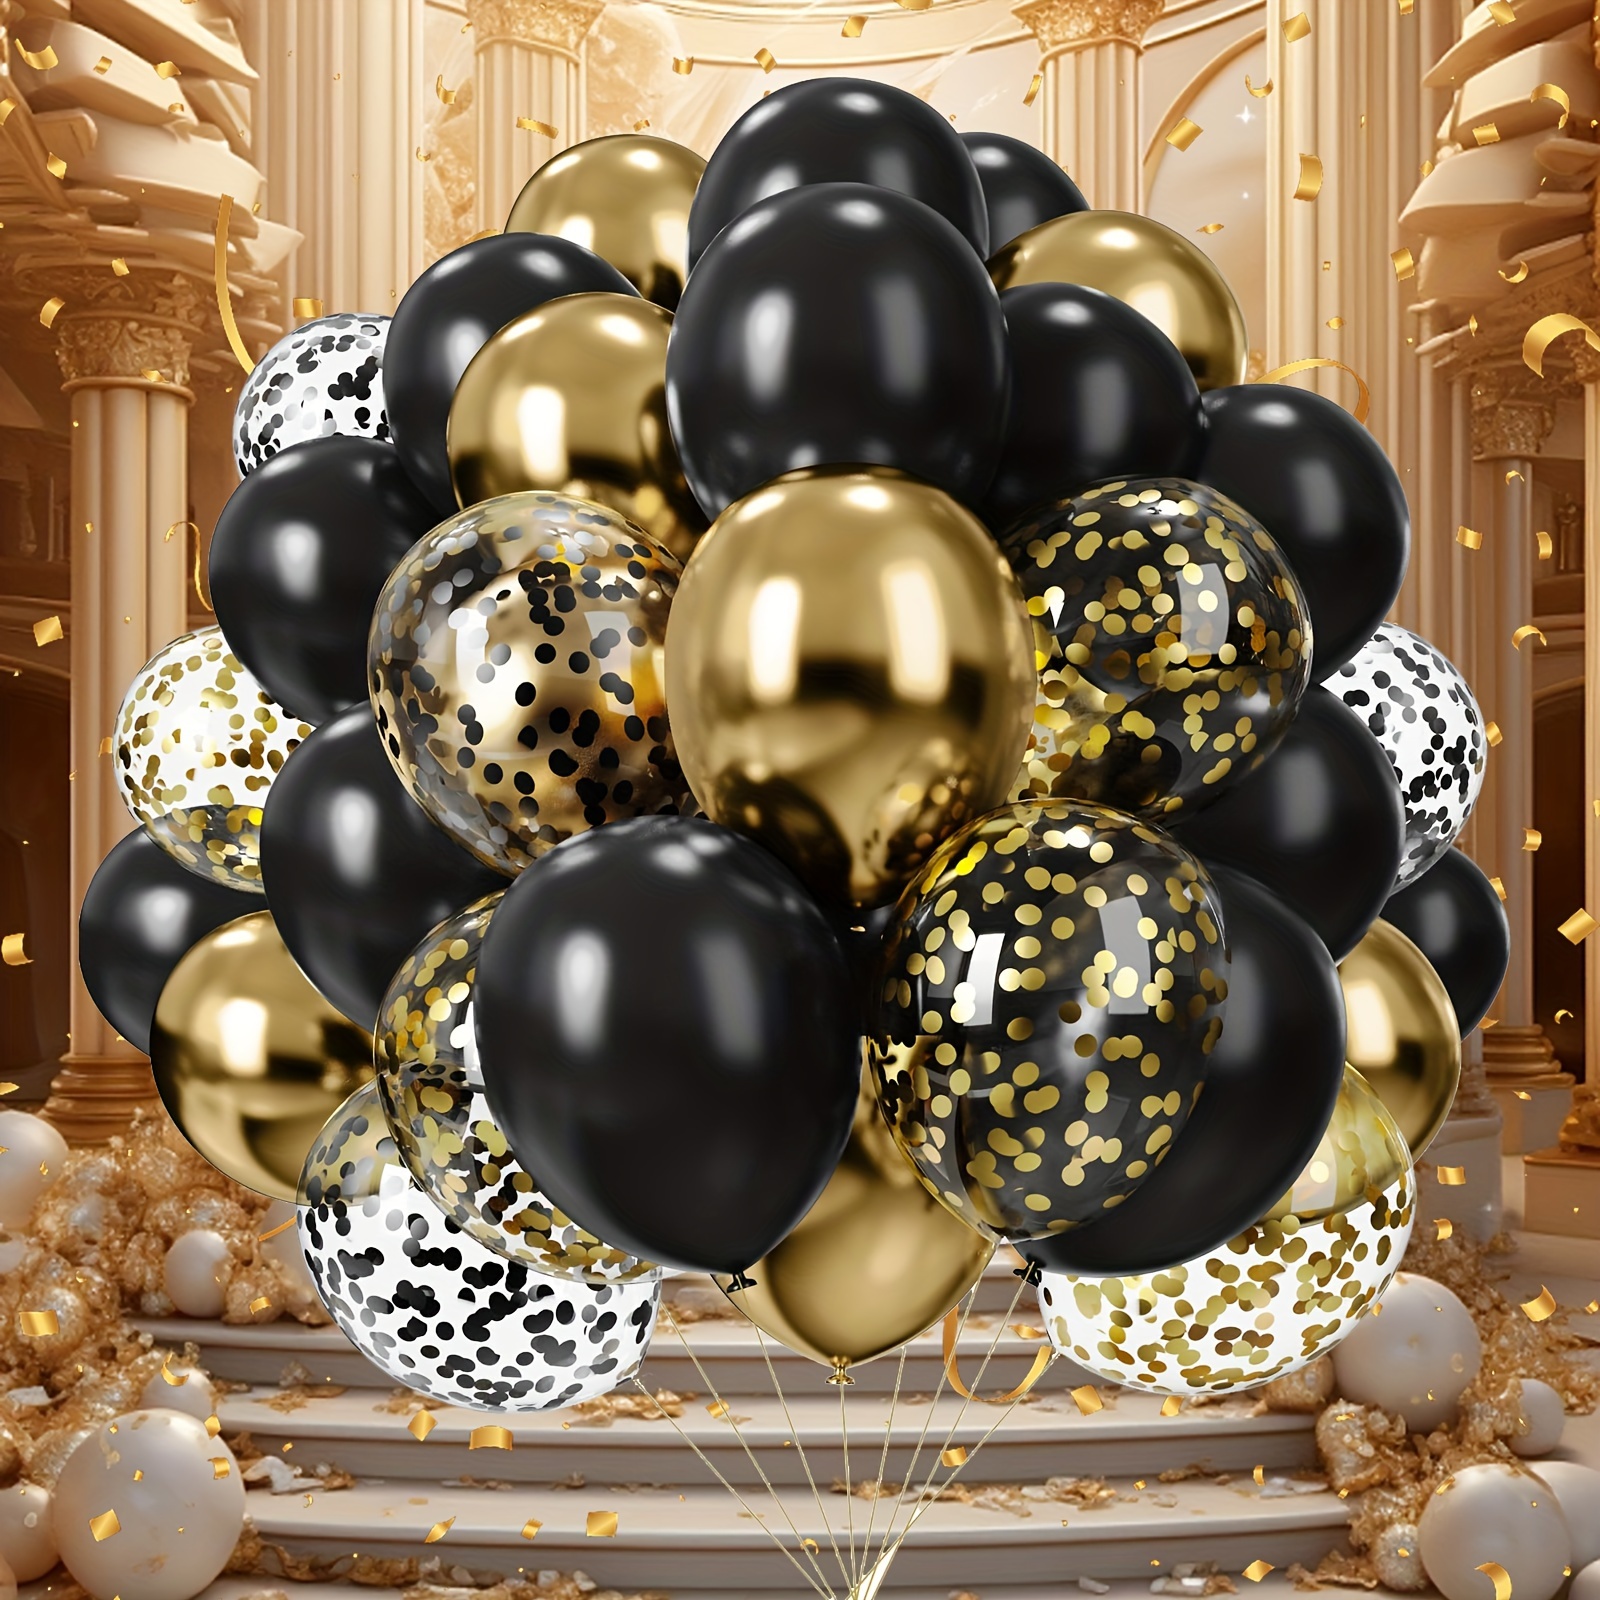 8 ballons dorés métallisés - Gamme couleur unie pour fêtes et